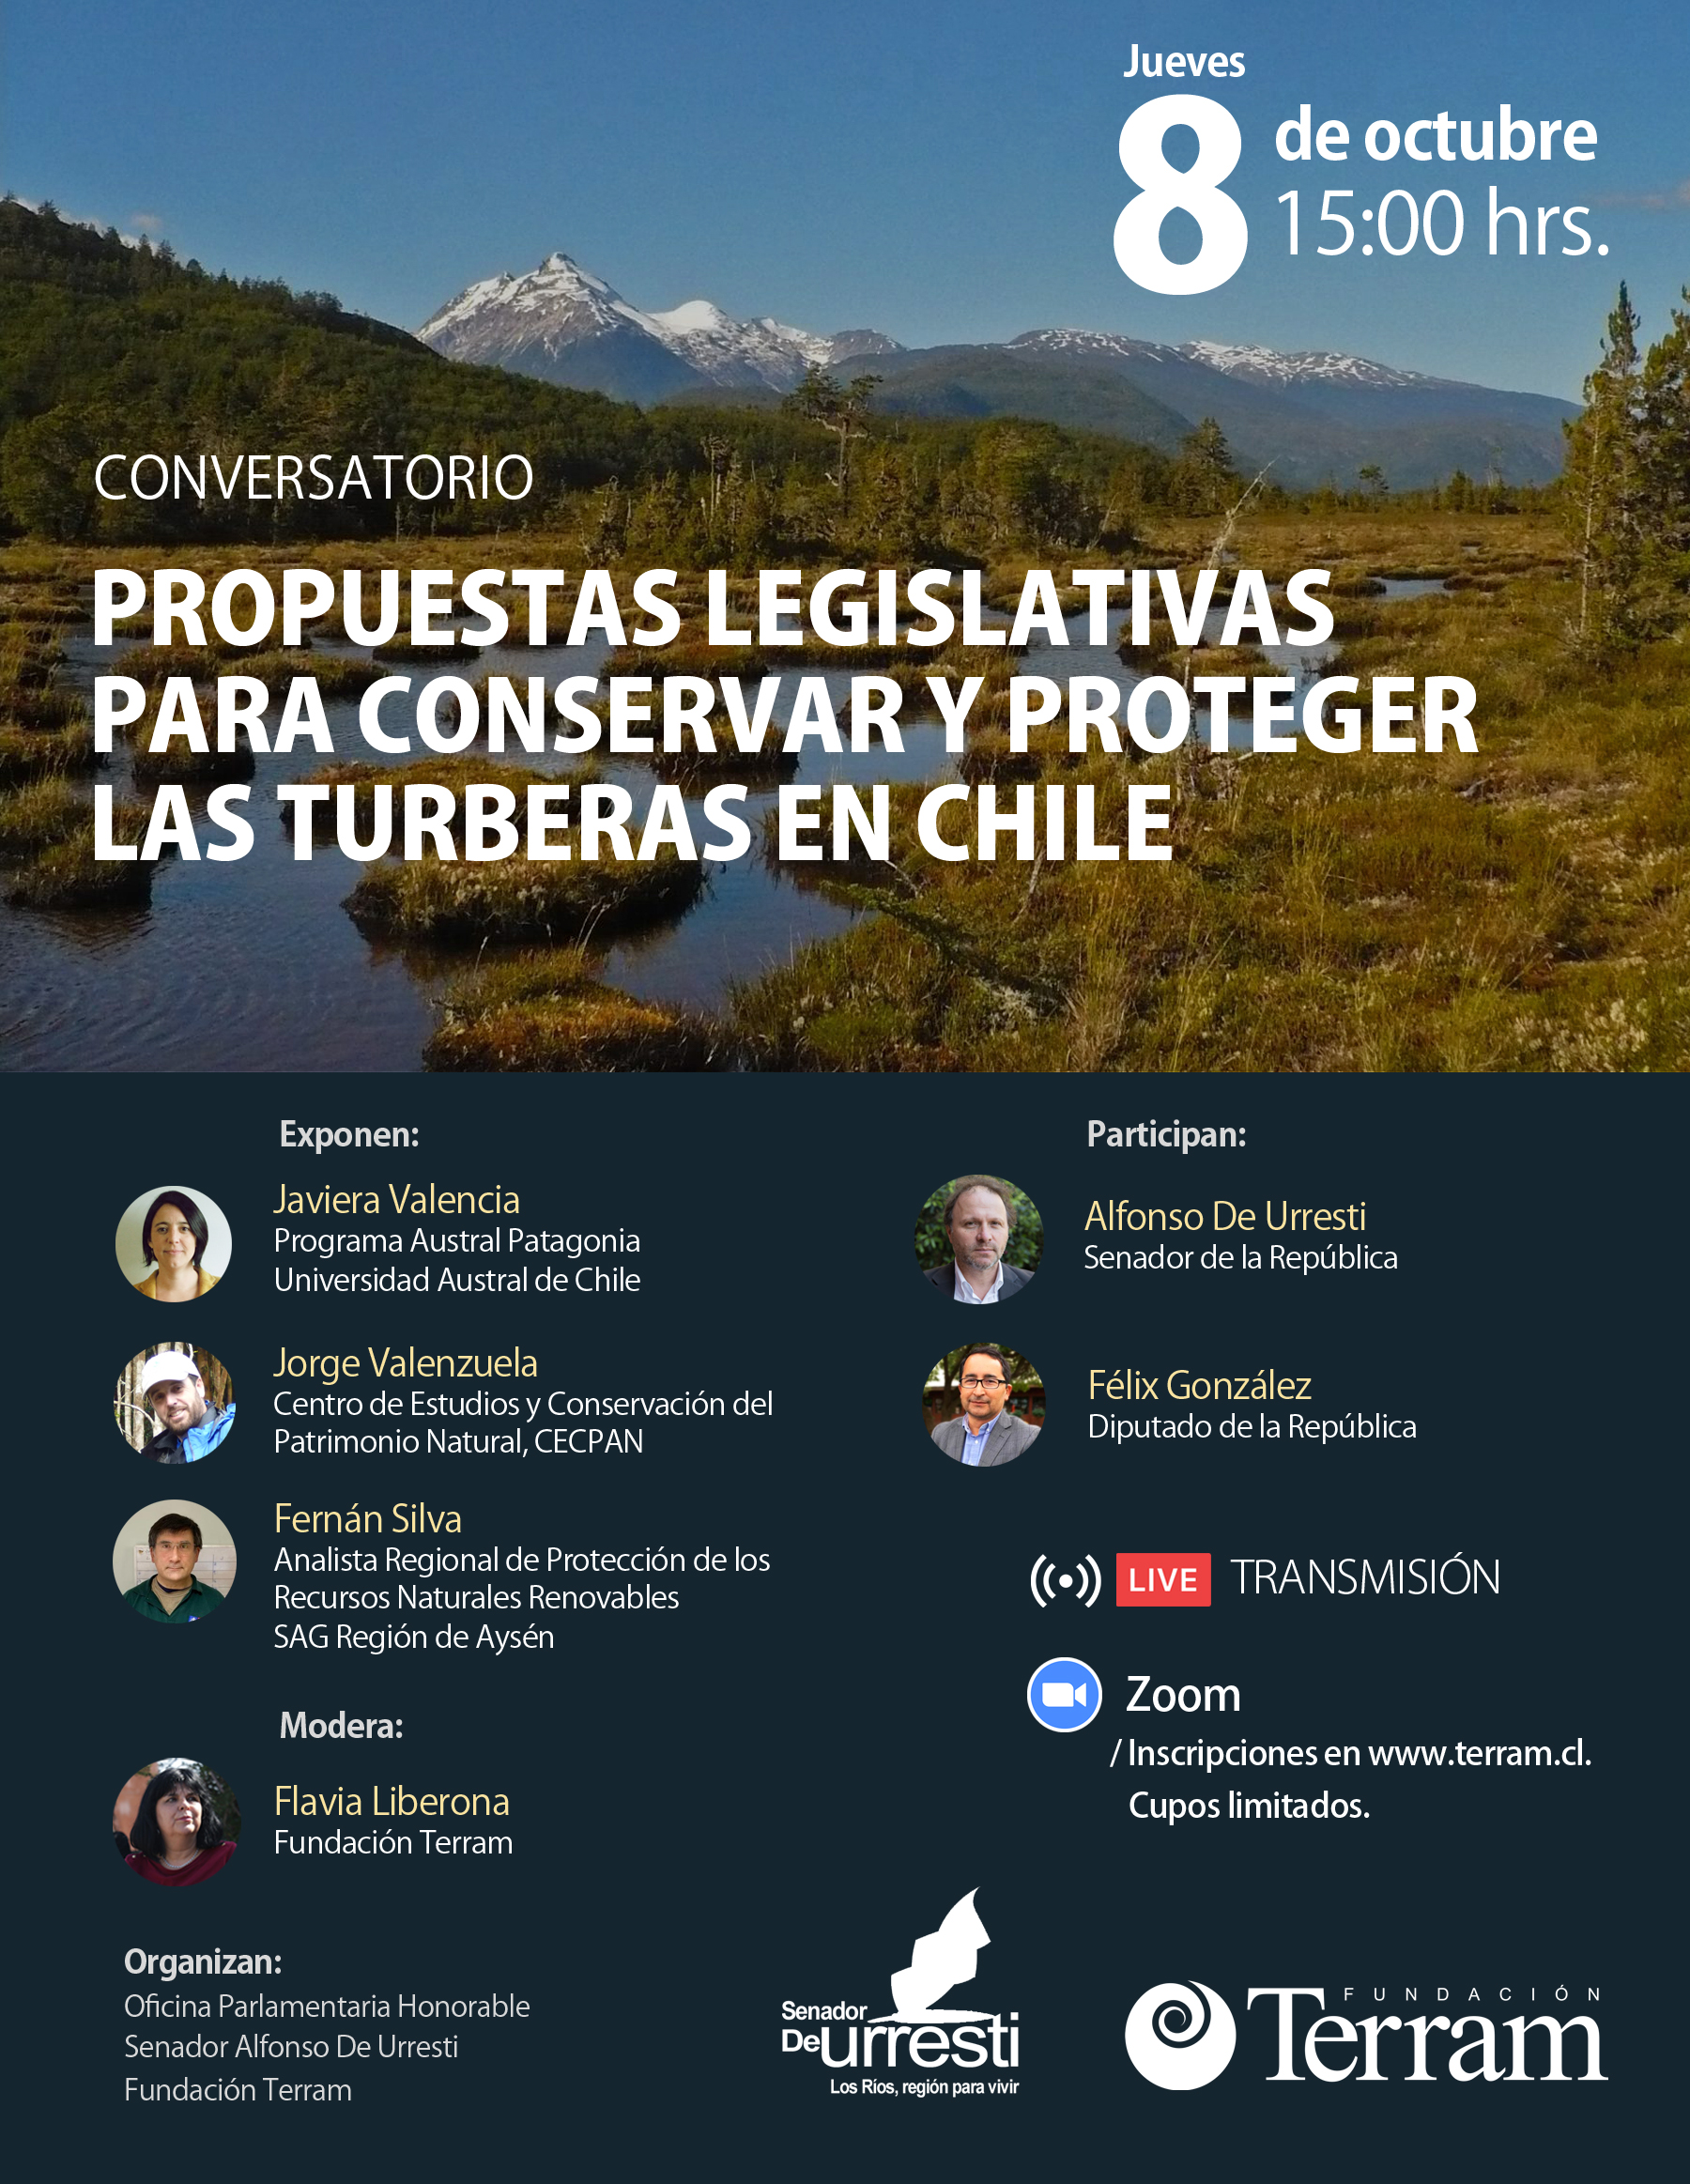 Conversatorio “Propuestas legislativas para conservar y proteger las turberas en Chile”